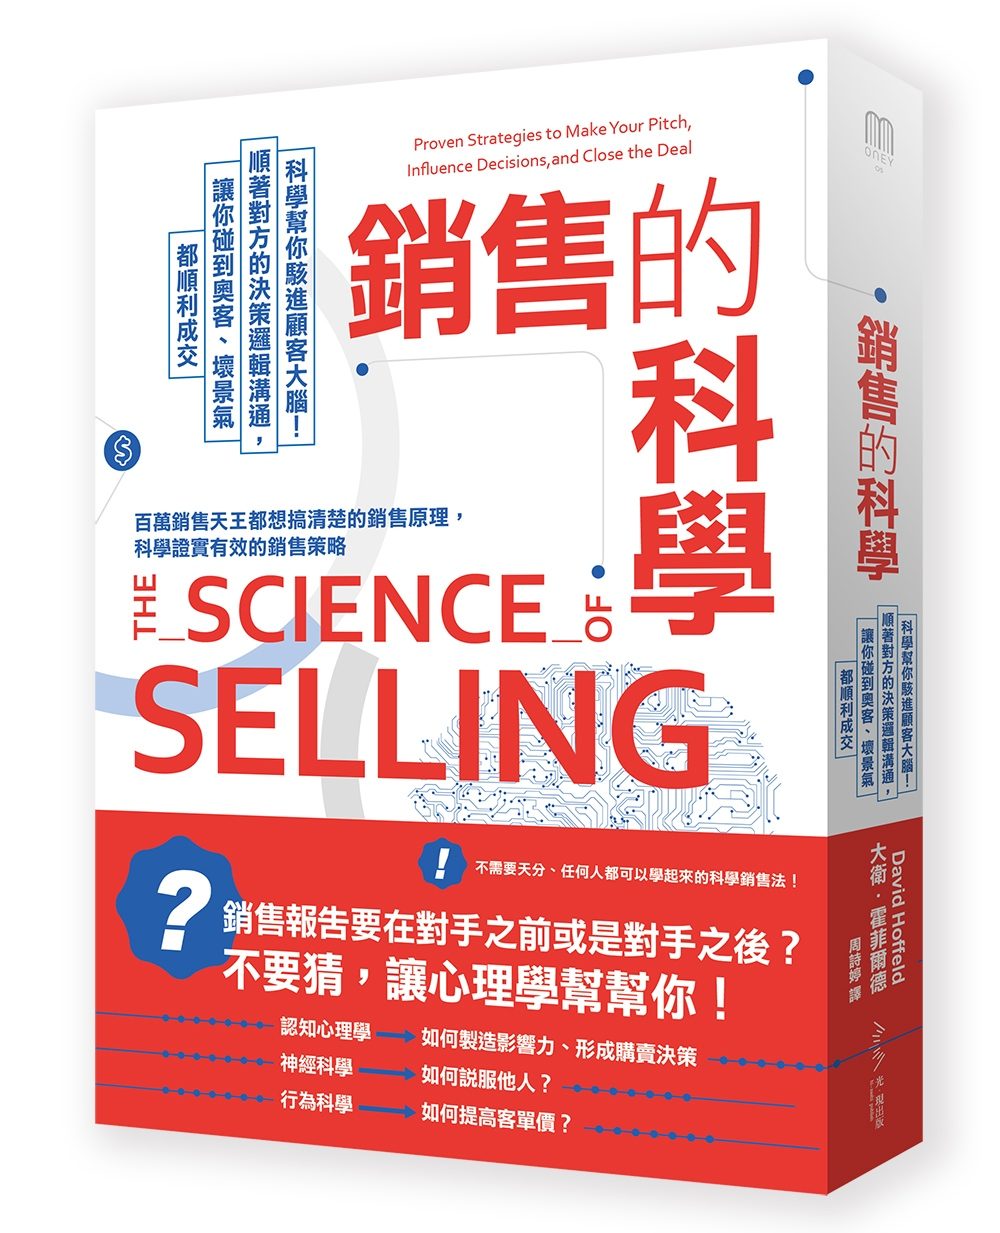 銷售的科學：科學幫你駭進顧客大腦！順著對方的決策邏輯溝通，讓你碰到奧客、壞景氣都順利成交